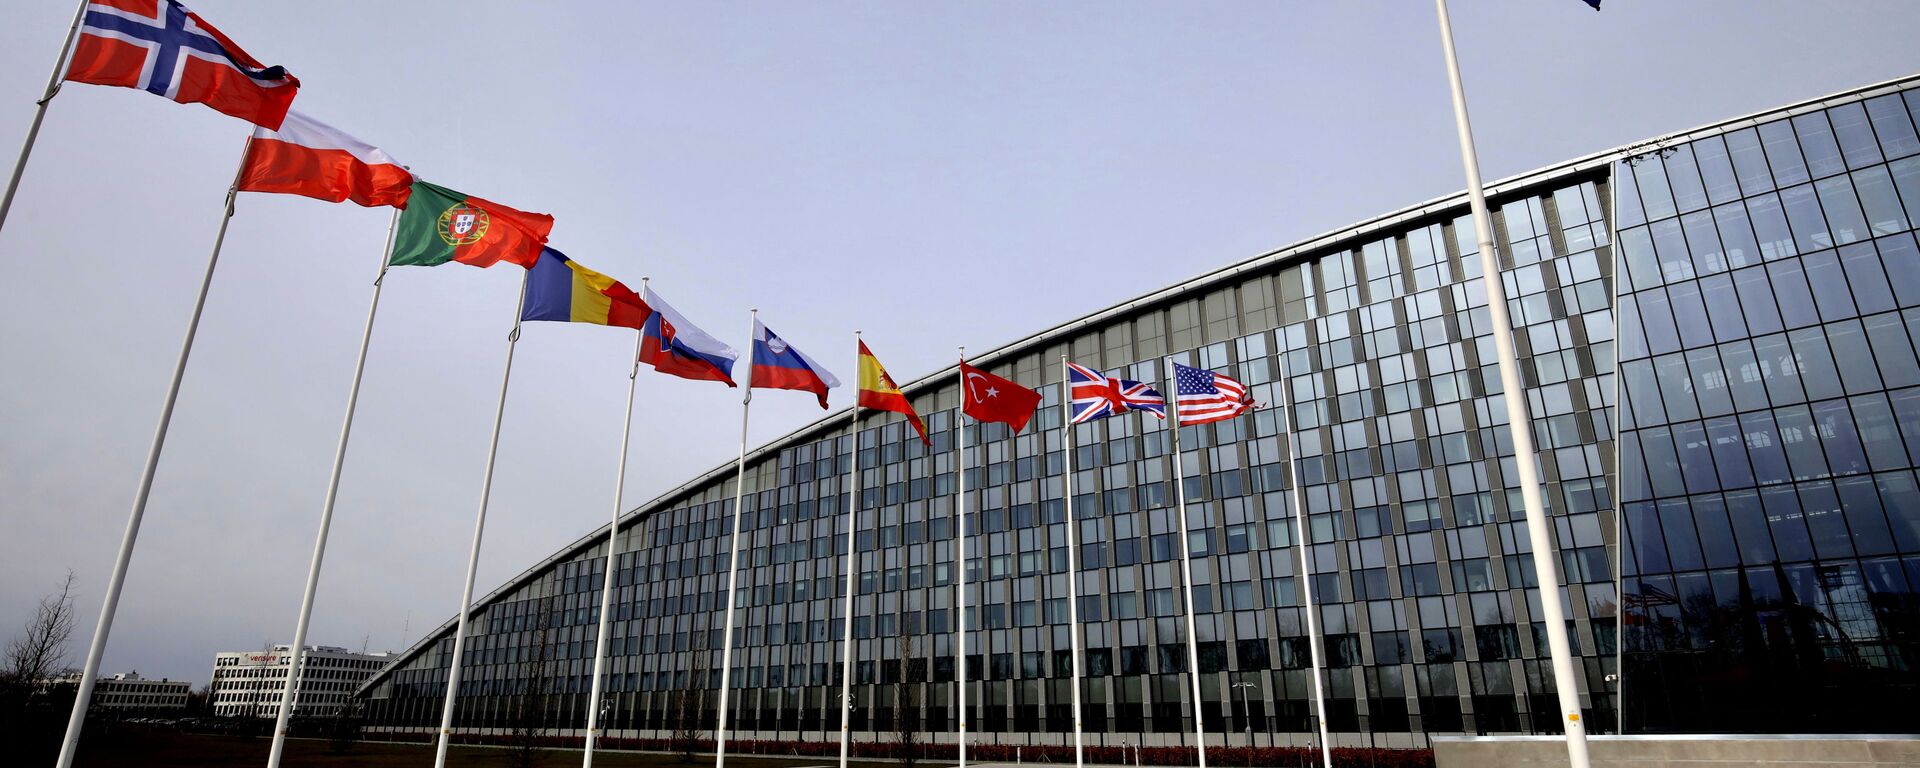 La sede de la OTAN en Bruselas y banderas de algunos países miembros - Sputnik Mundo, 1920, 22.01.2021